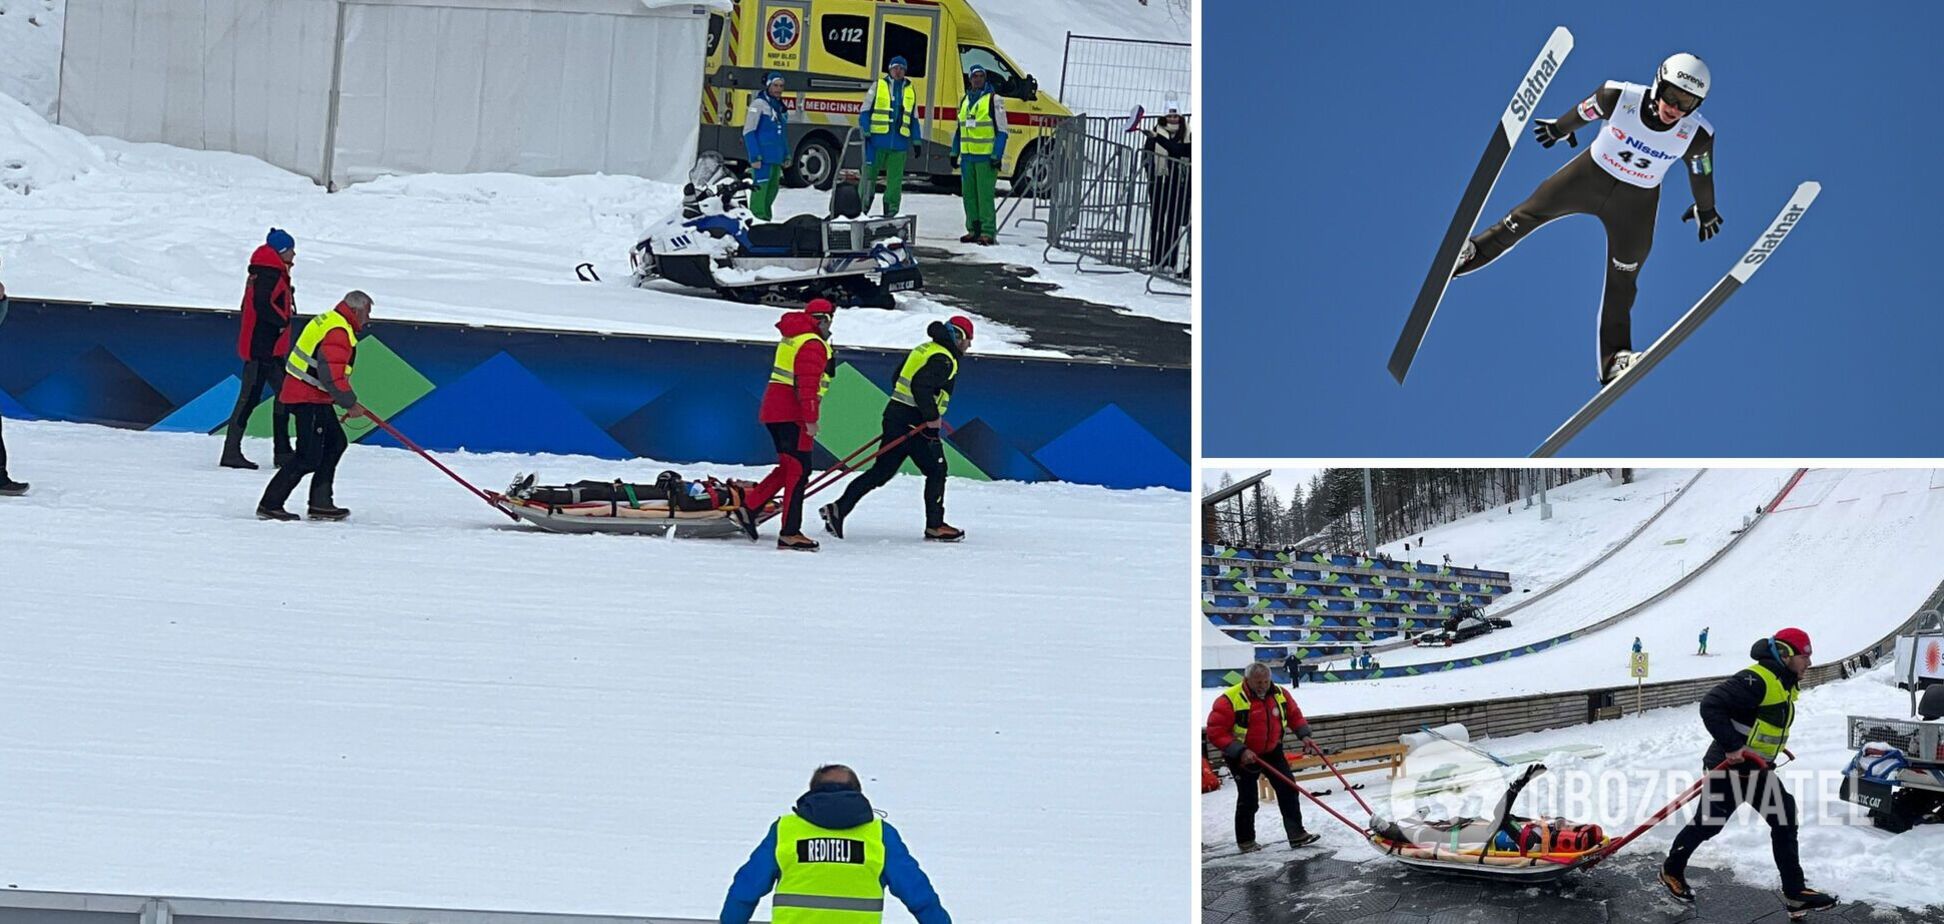 Олимпийский чемпион потерял лыжу на гигантском трамплине и приземлился головой вперед. Видео